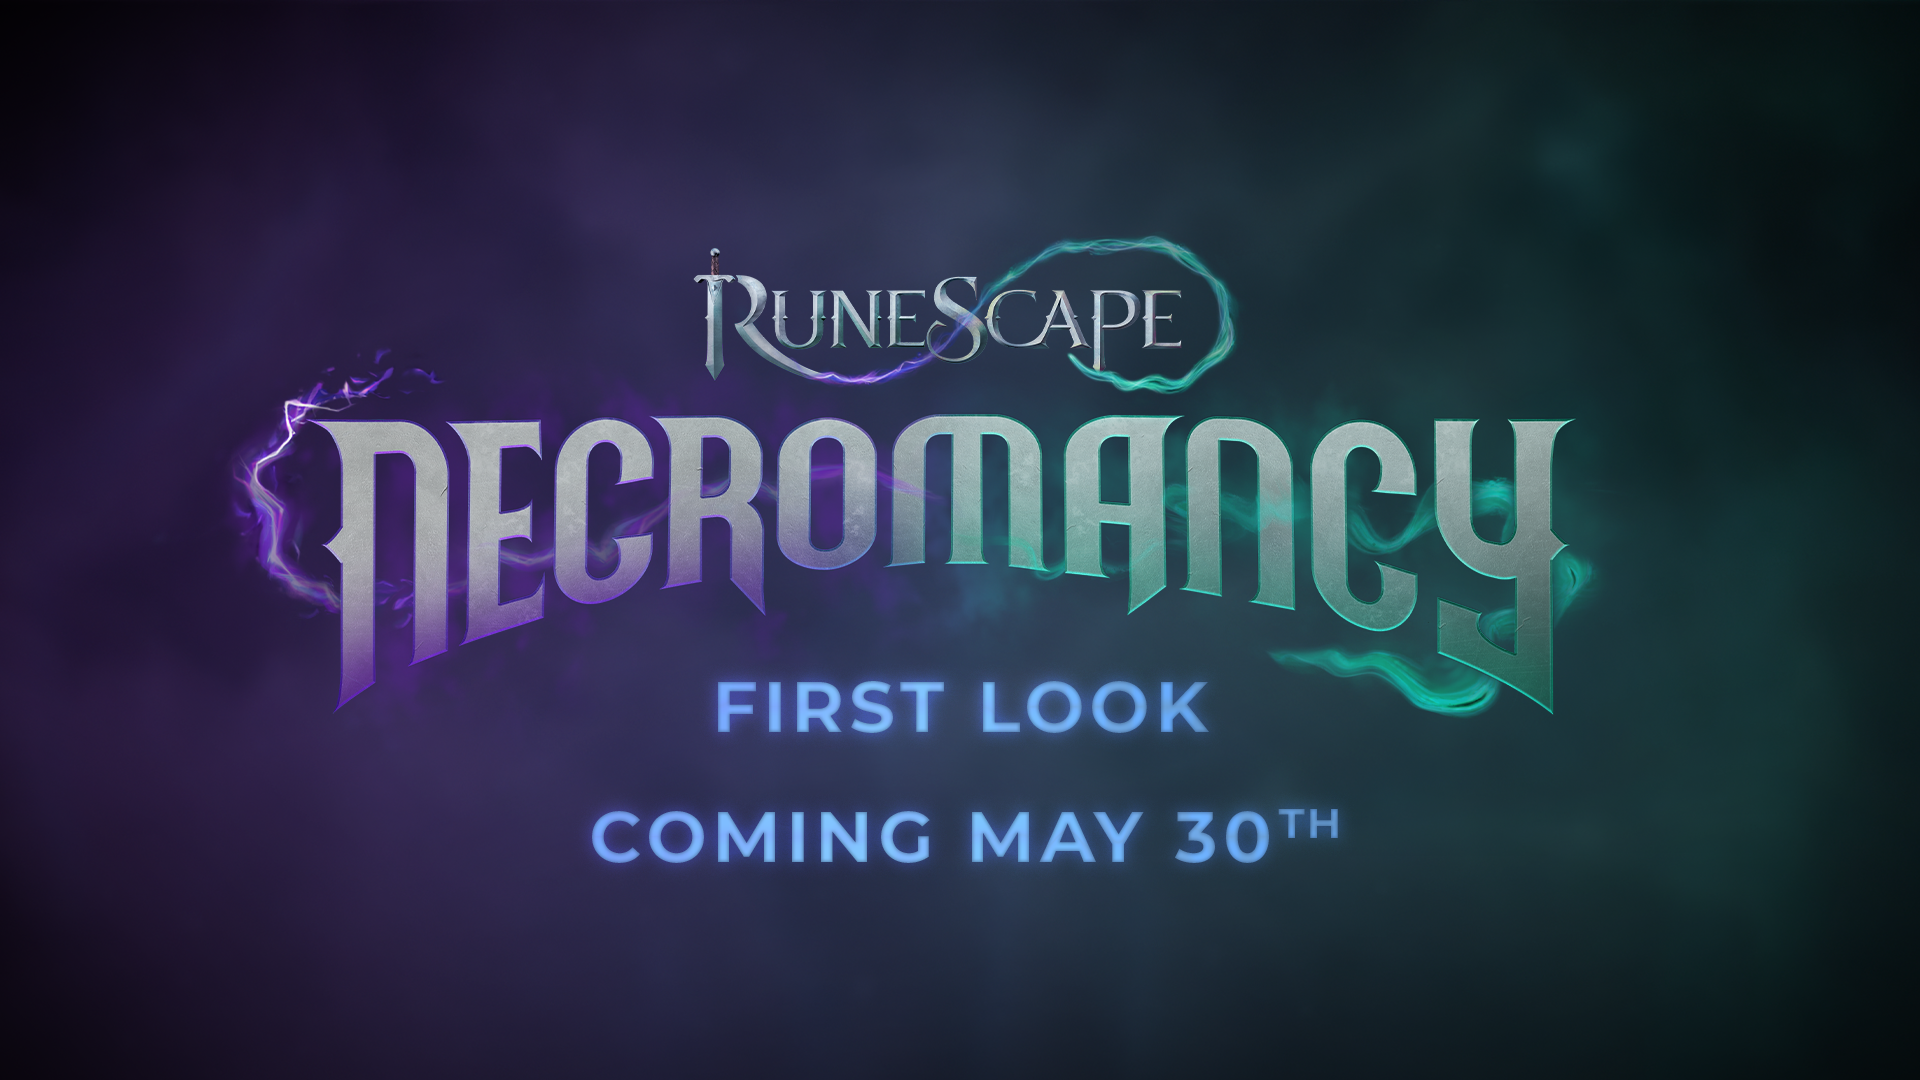 Runescape: Necromancy Details Revealed